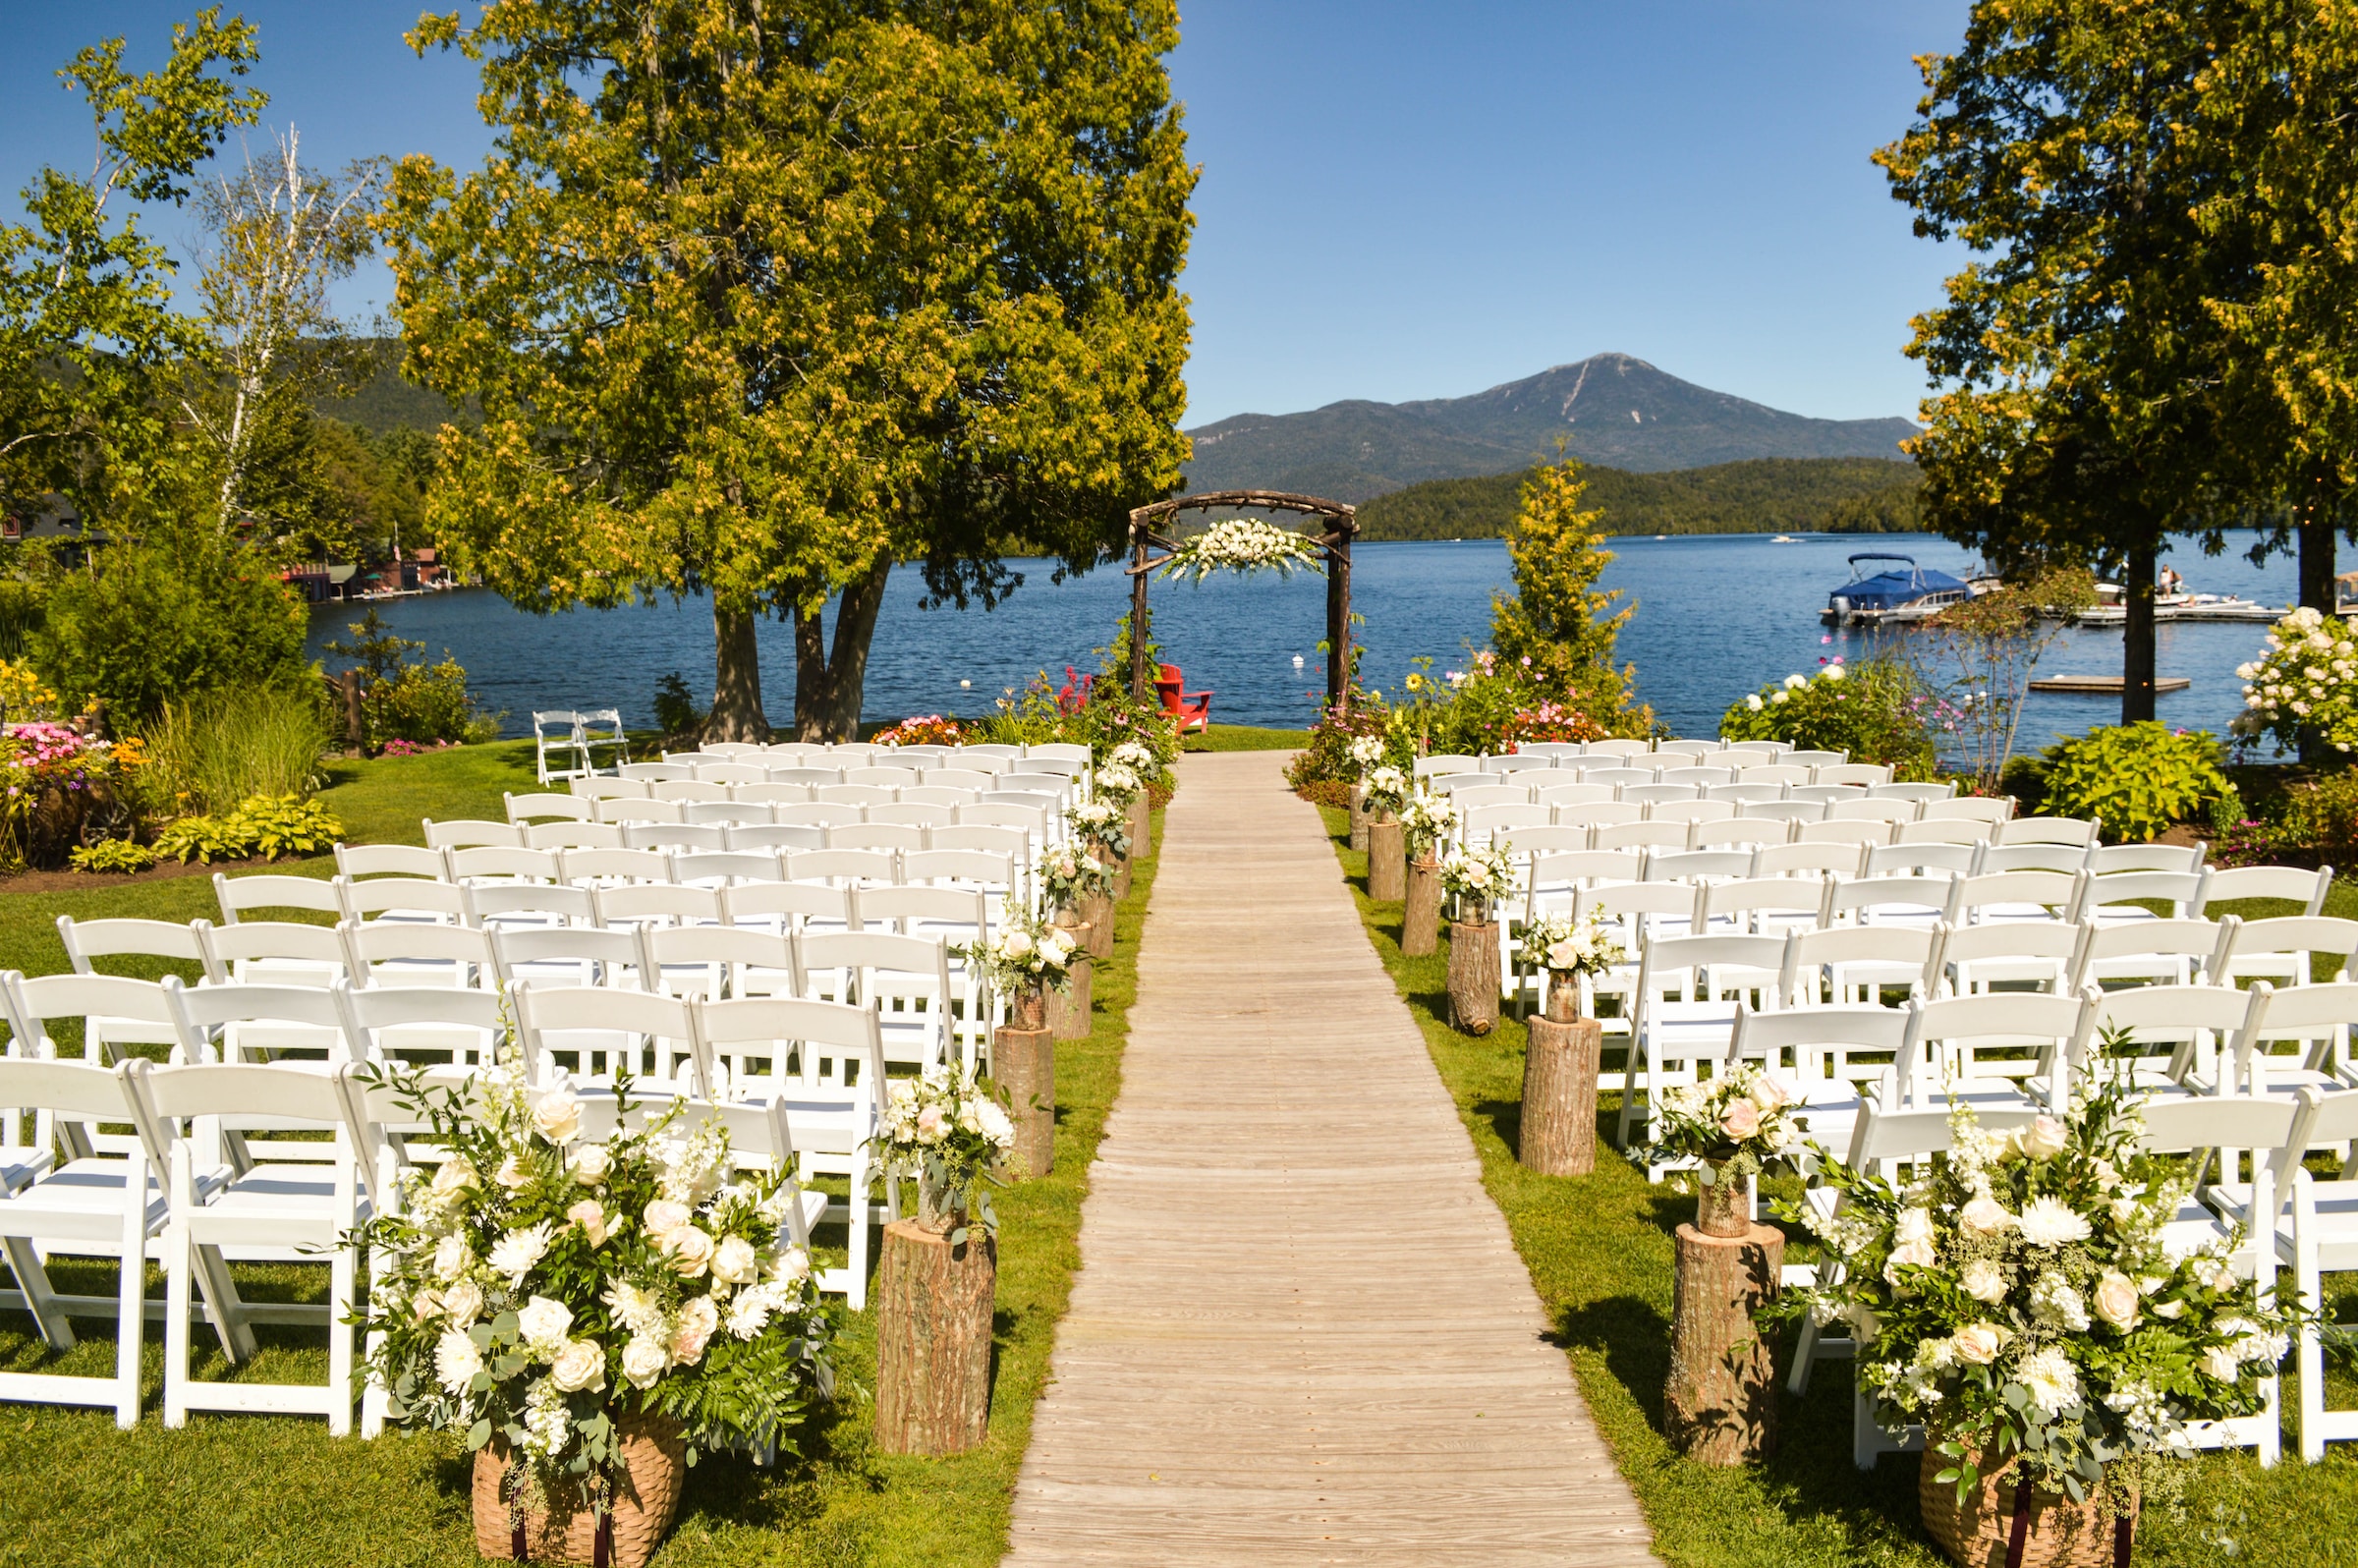 Un precioso lugar para celebrar una boda al aire libre | Foto: Unsplash